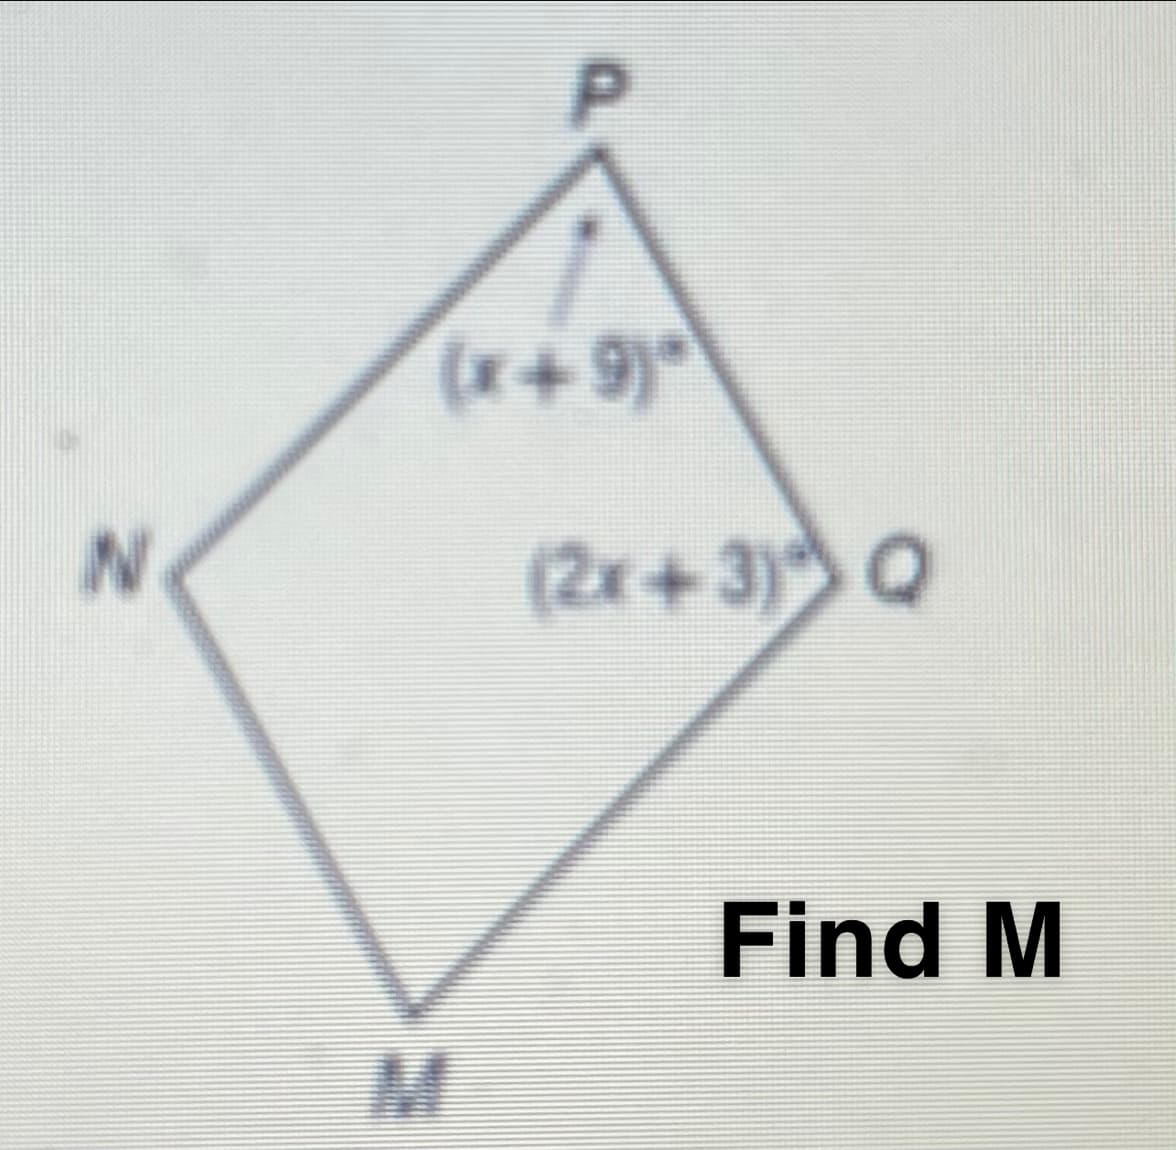 P.
(x+9)°
(2x+3) Q
Find M
